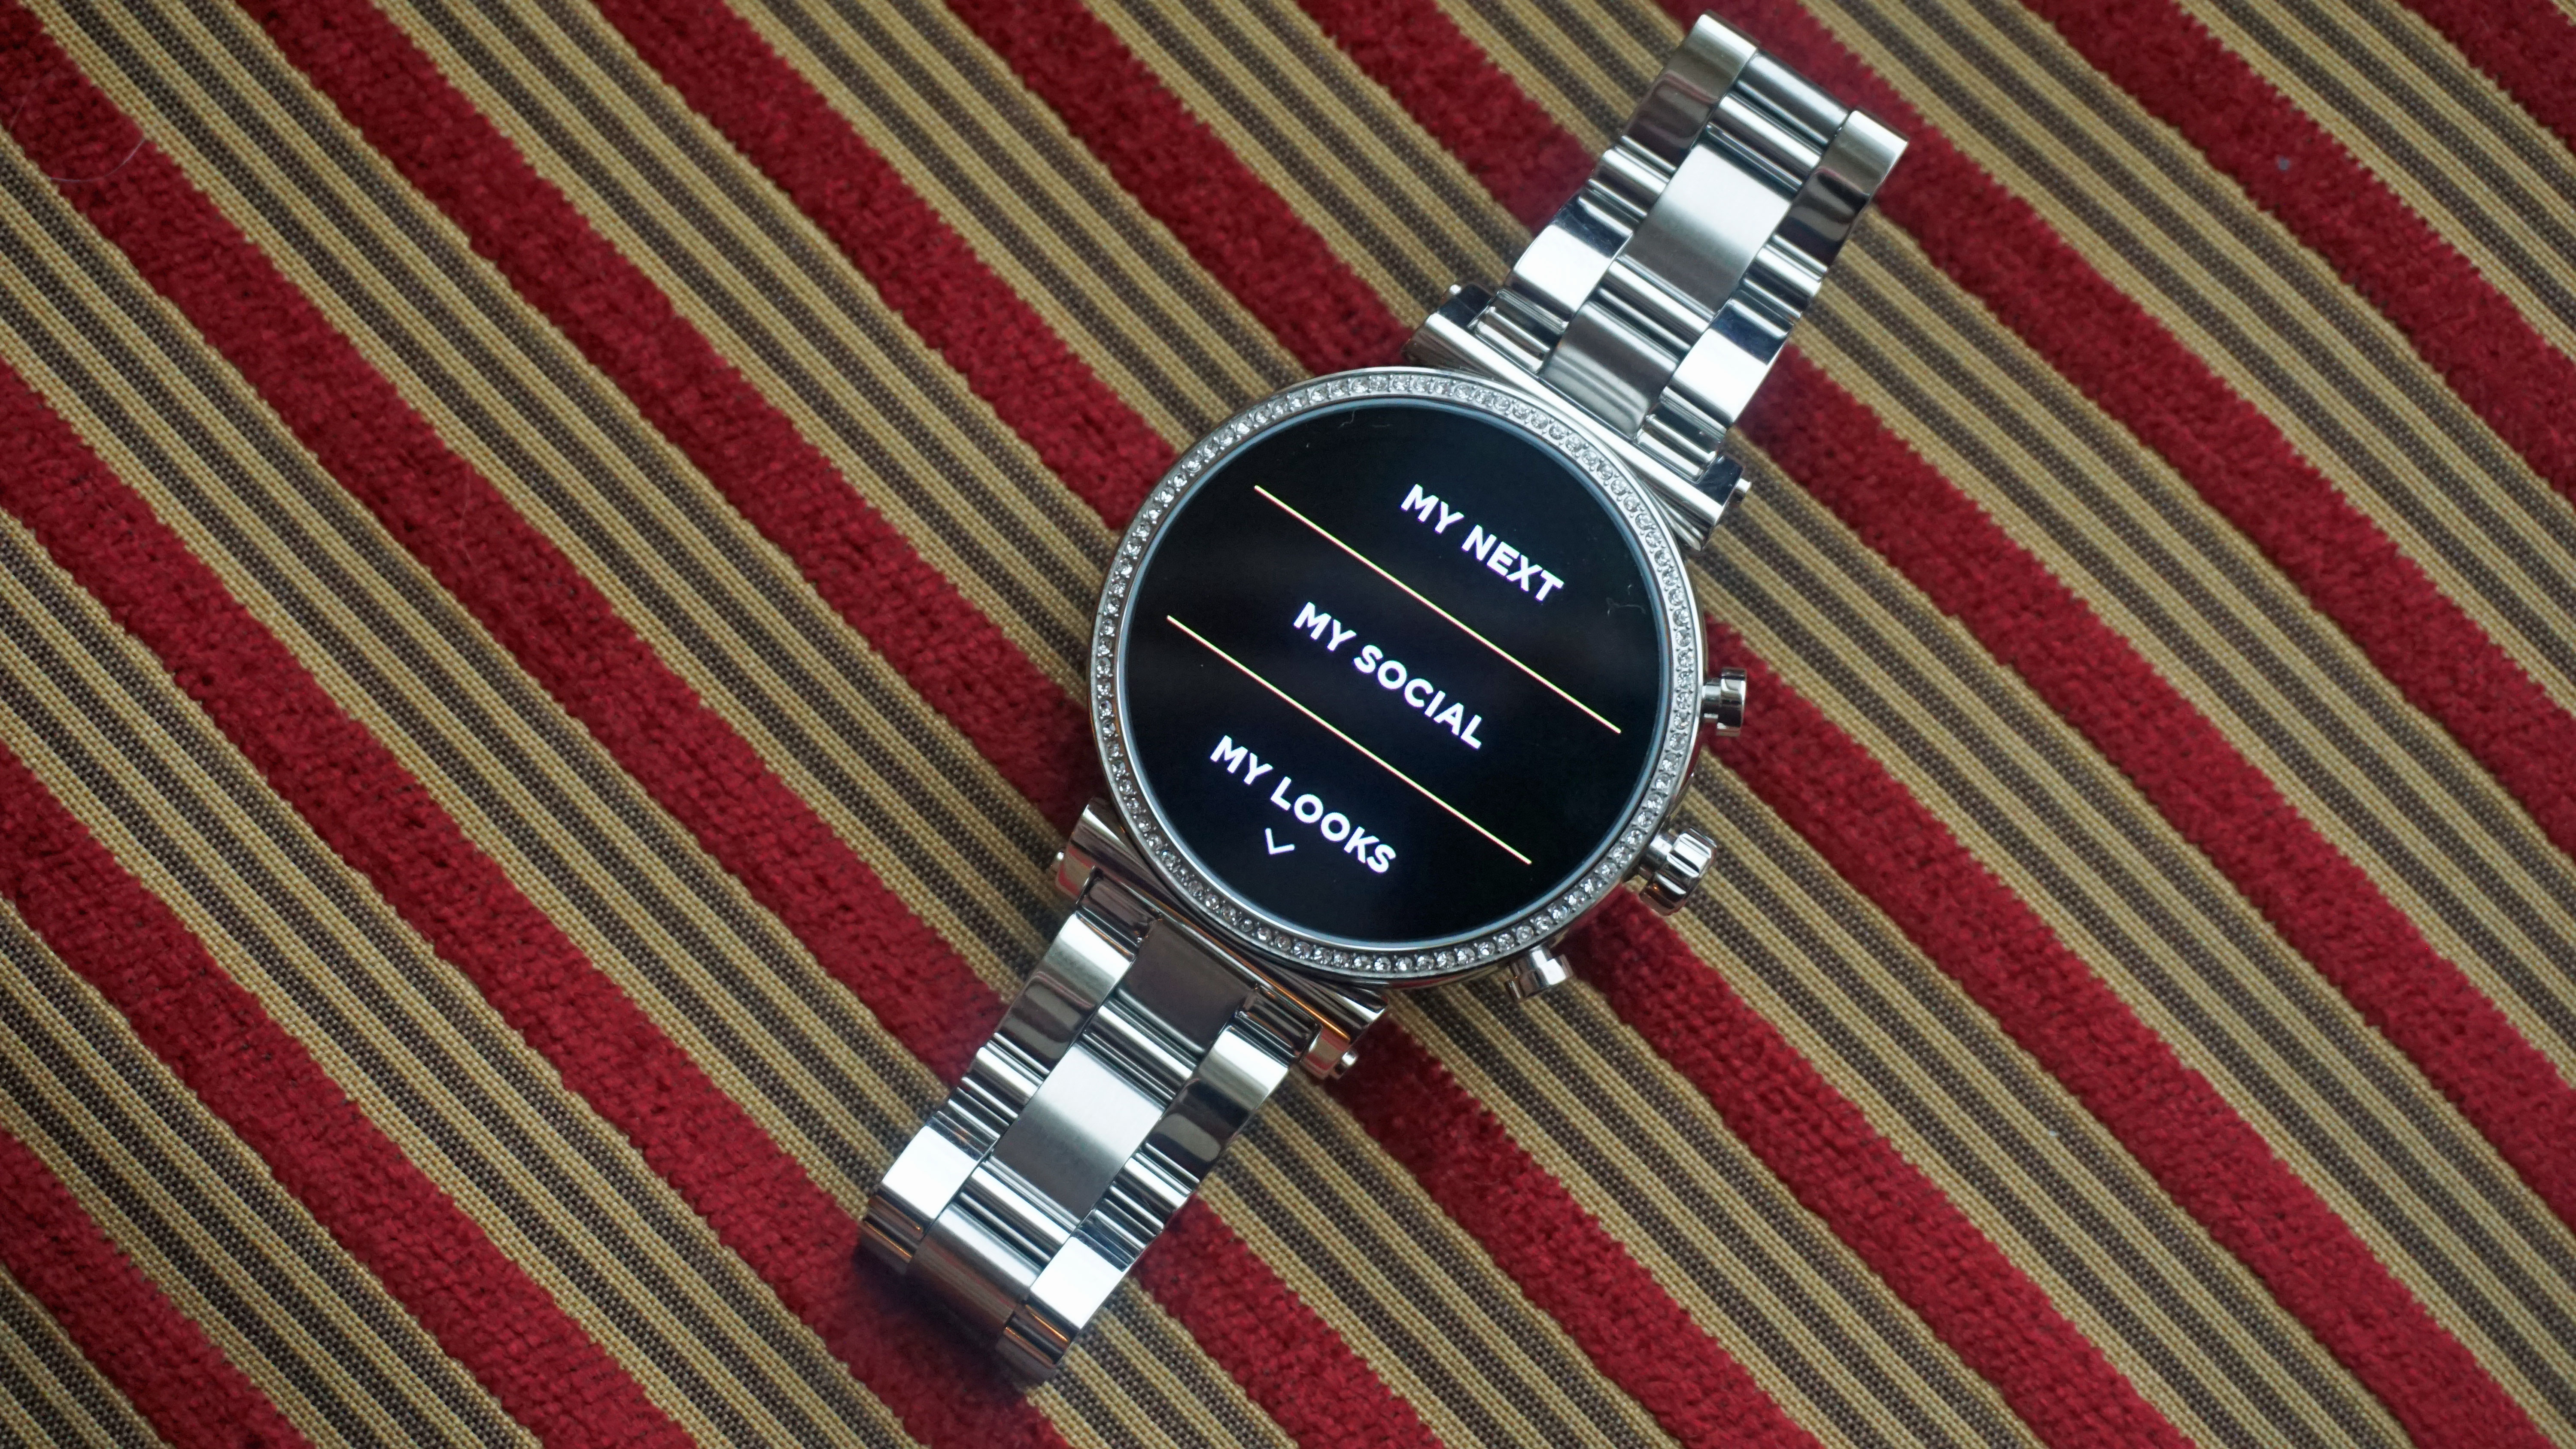 michael kors sofie smartwatch features